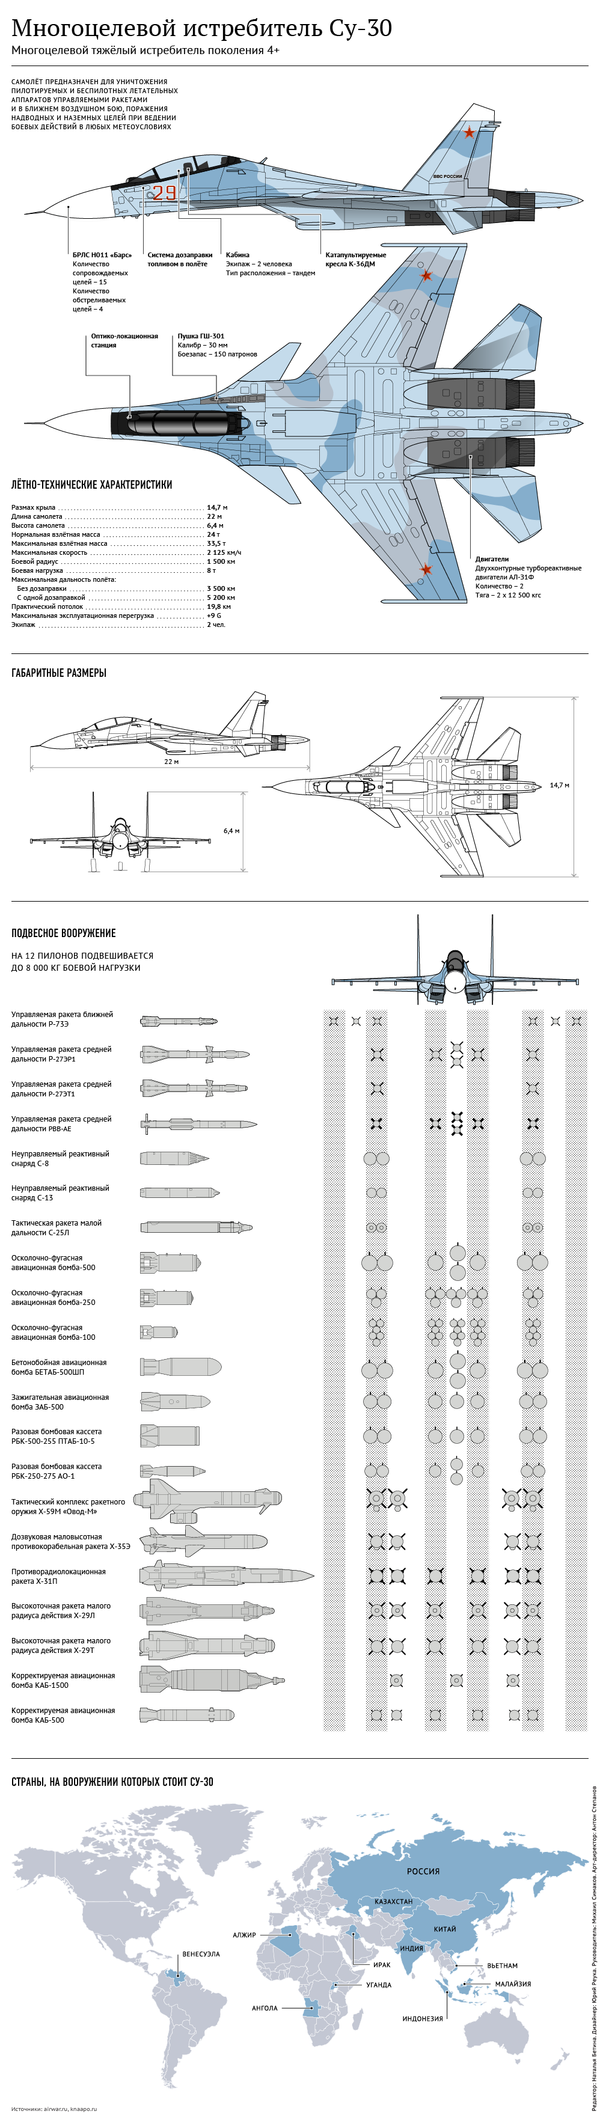 Многоцелевой истребитель Су-30 - инфографика на sputnik.by - Sputnik Беларусь